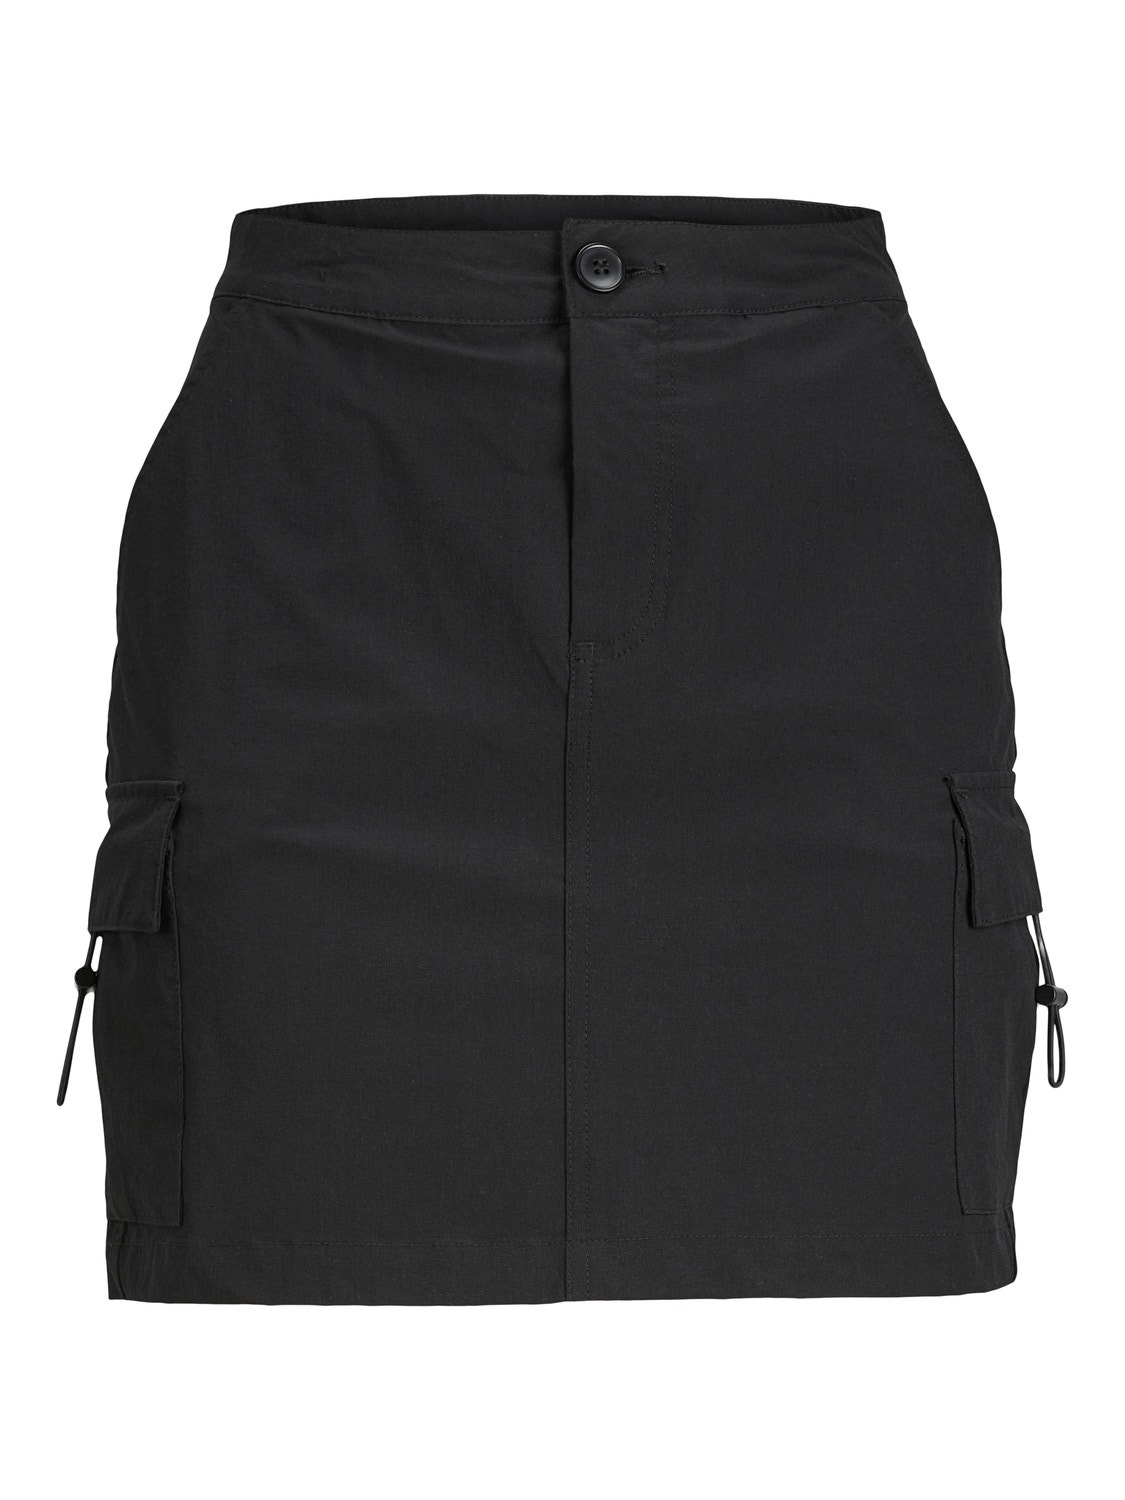 JJXX JXHINT Skirt -Black - 12243628